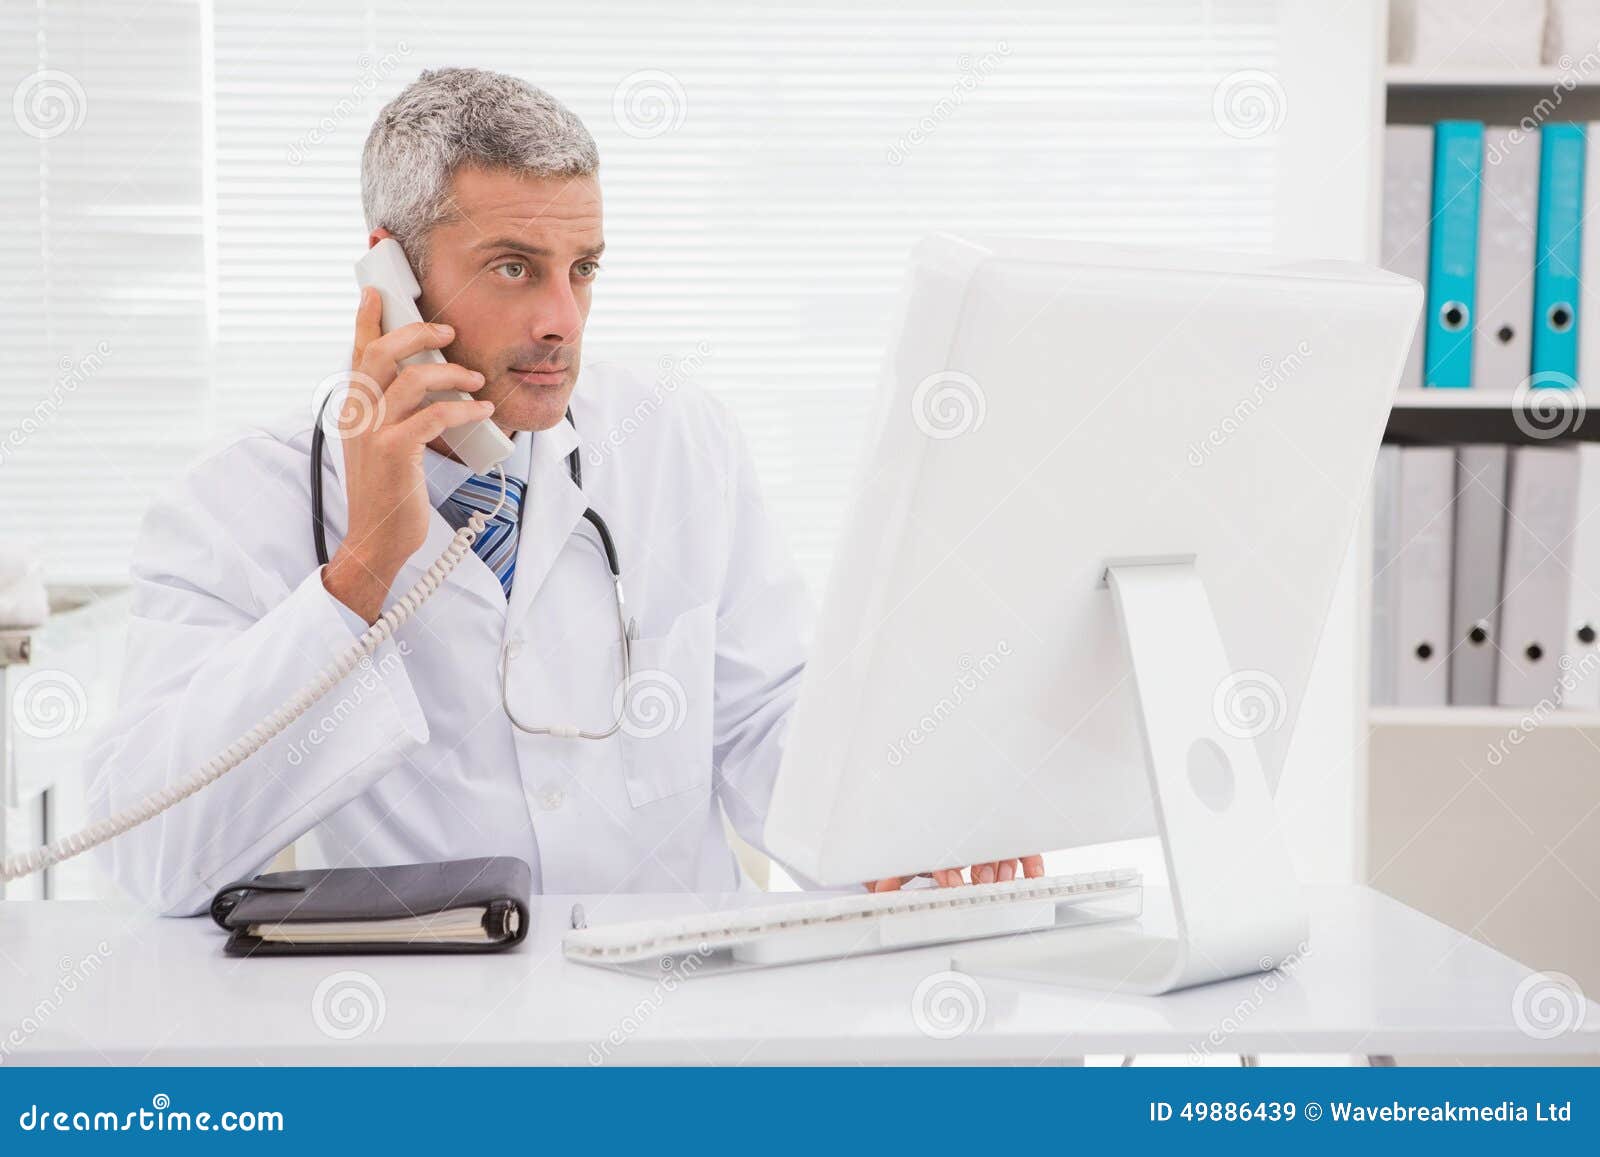 Позвонить в медцентр. Доктор звонит. Врач звонит по телефону. Позвоните доктору шоу. Фото врача с планшетом.